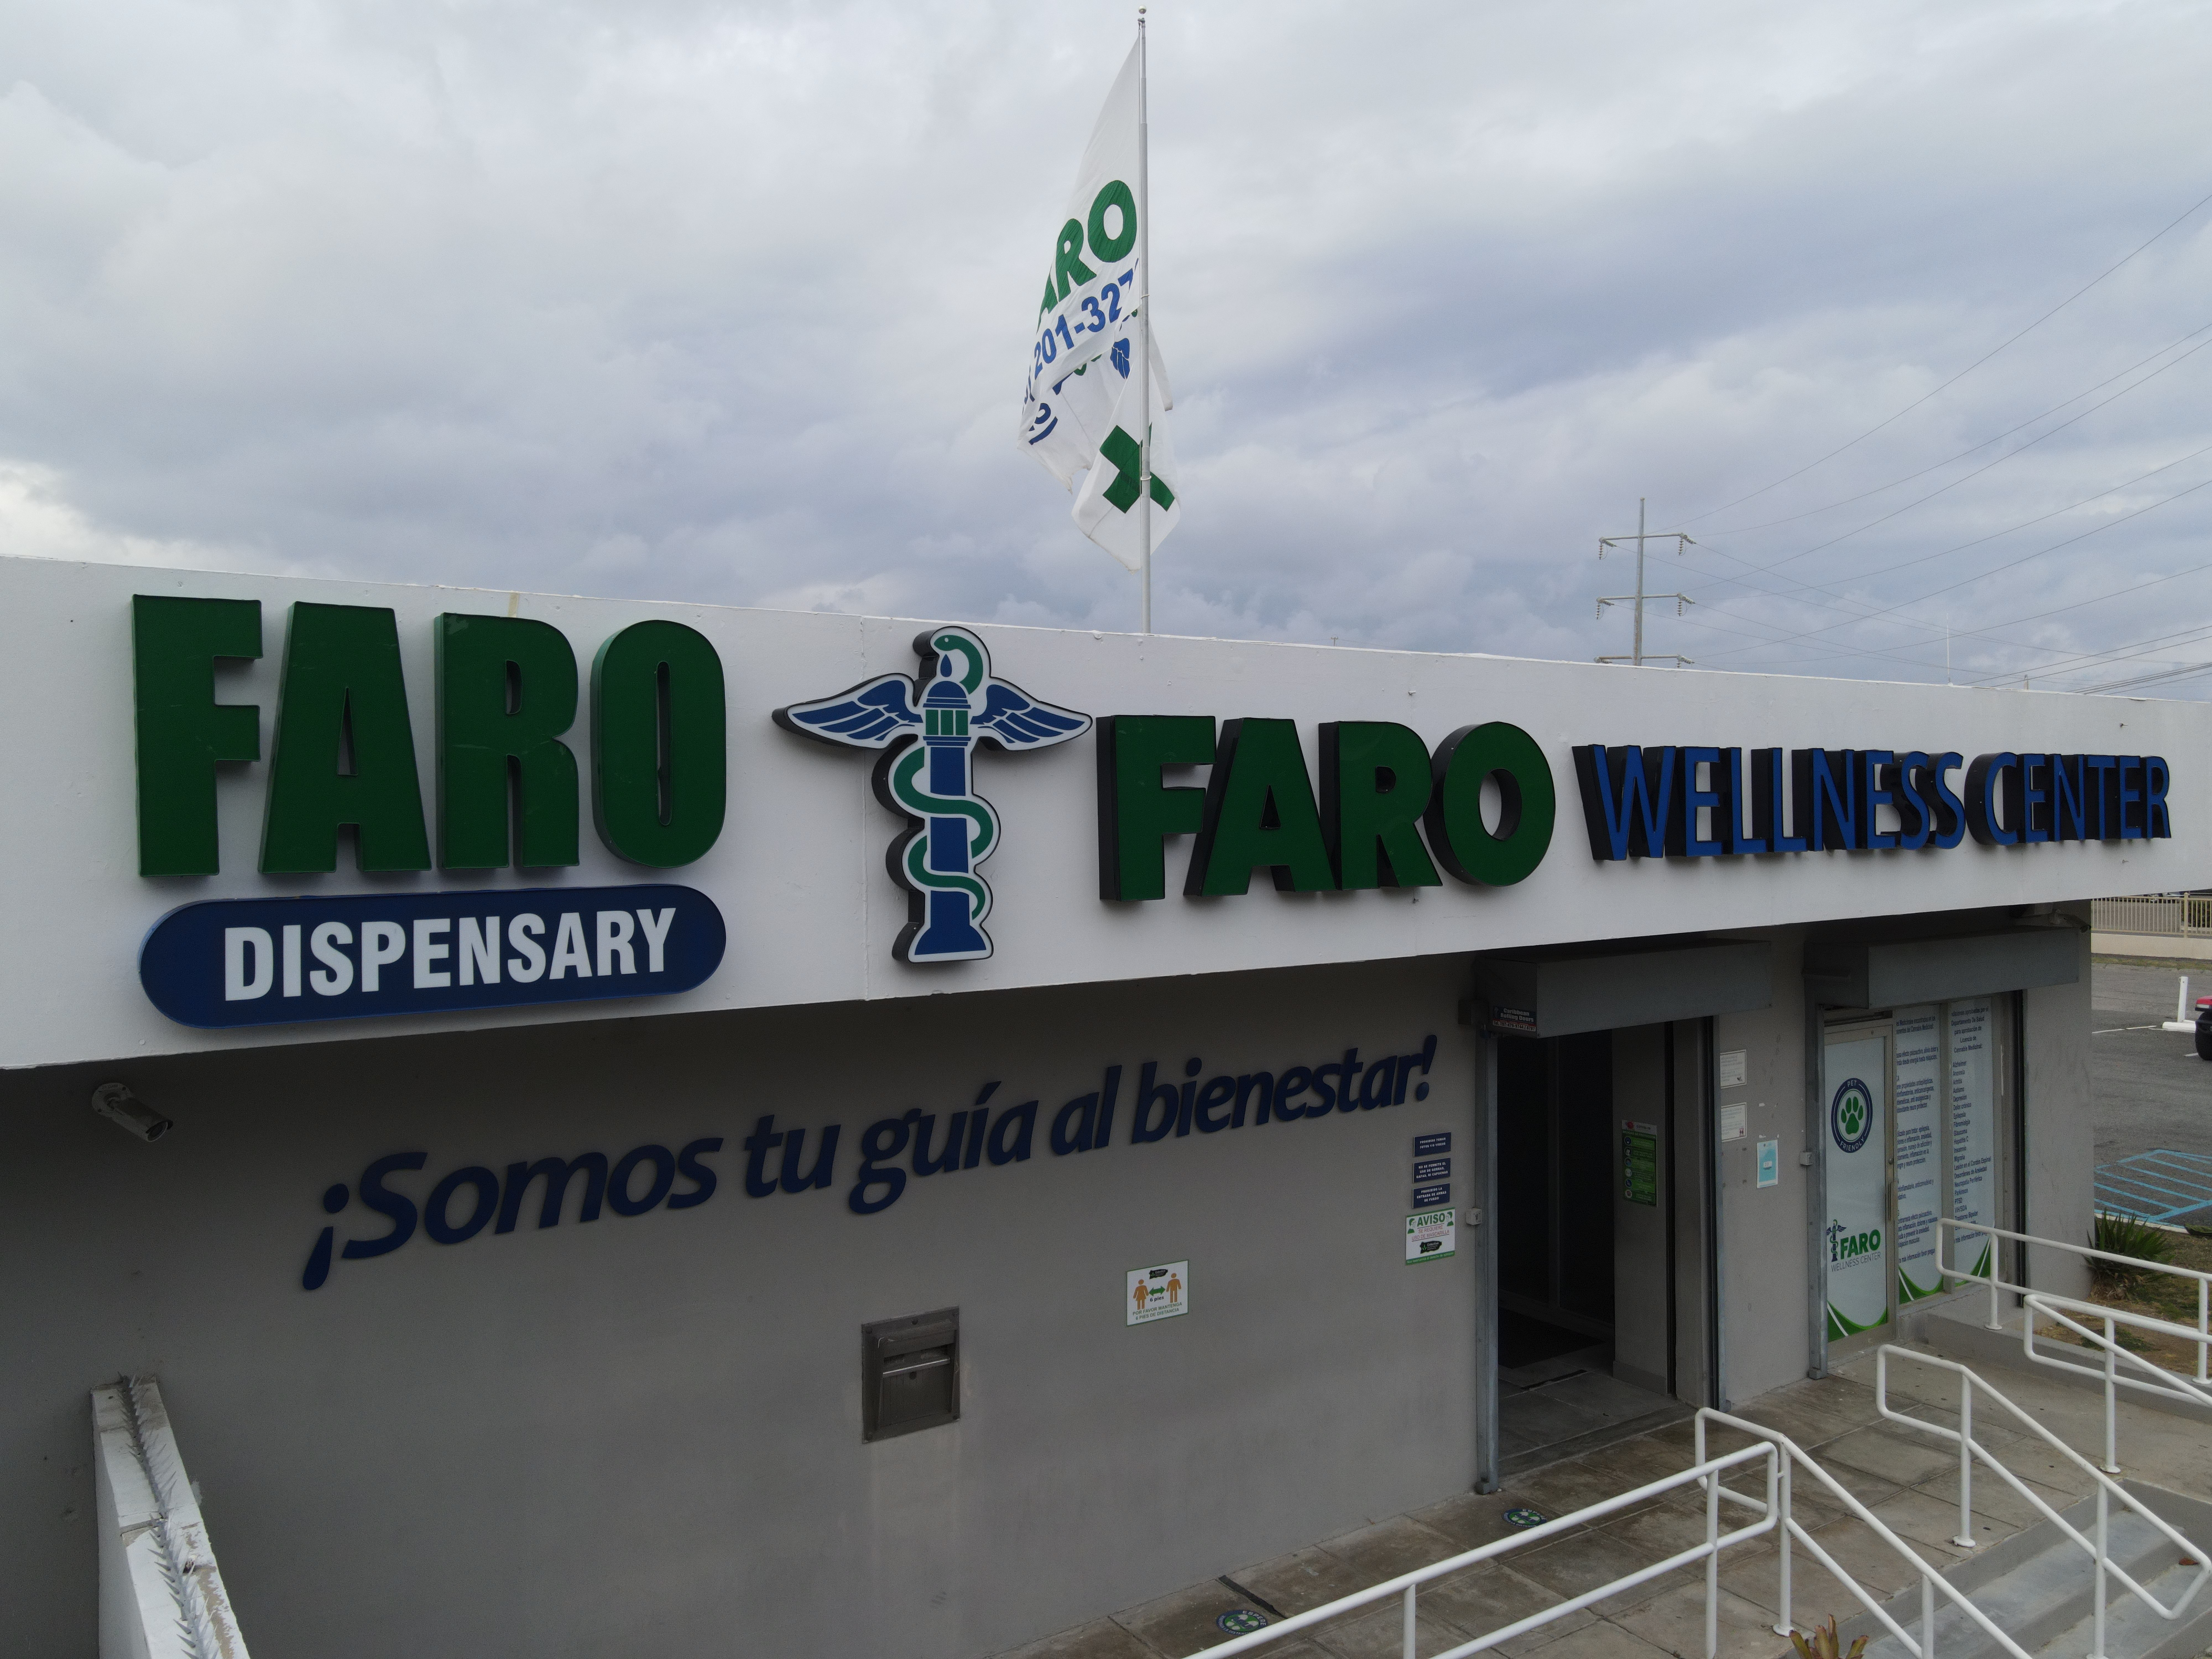 Faro Dispensary & Wellness Center: un pilar de la industria del cannabis medicinal en Puerto Rico